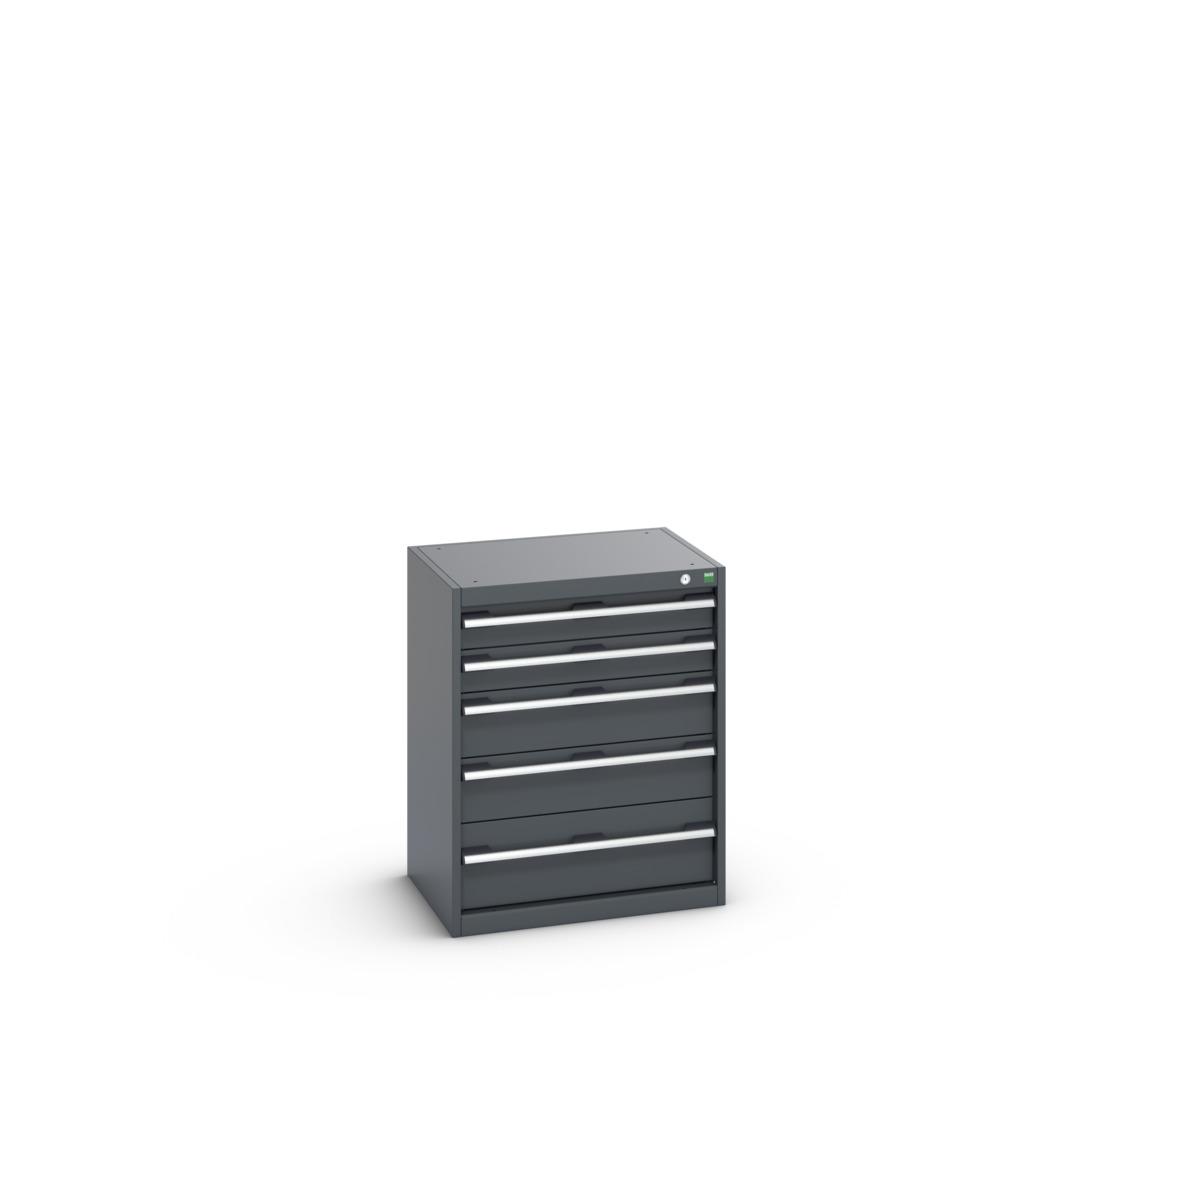 40011046.77V - cubio drawer cabinet